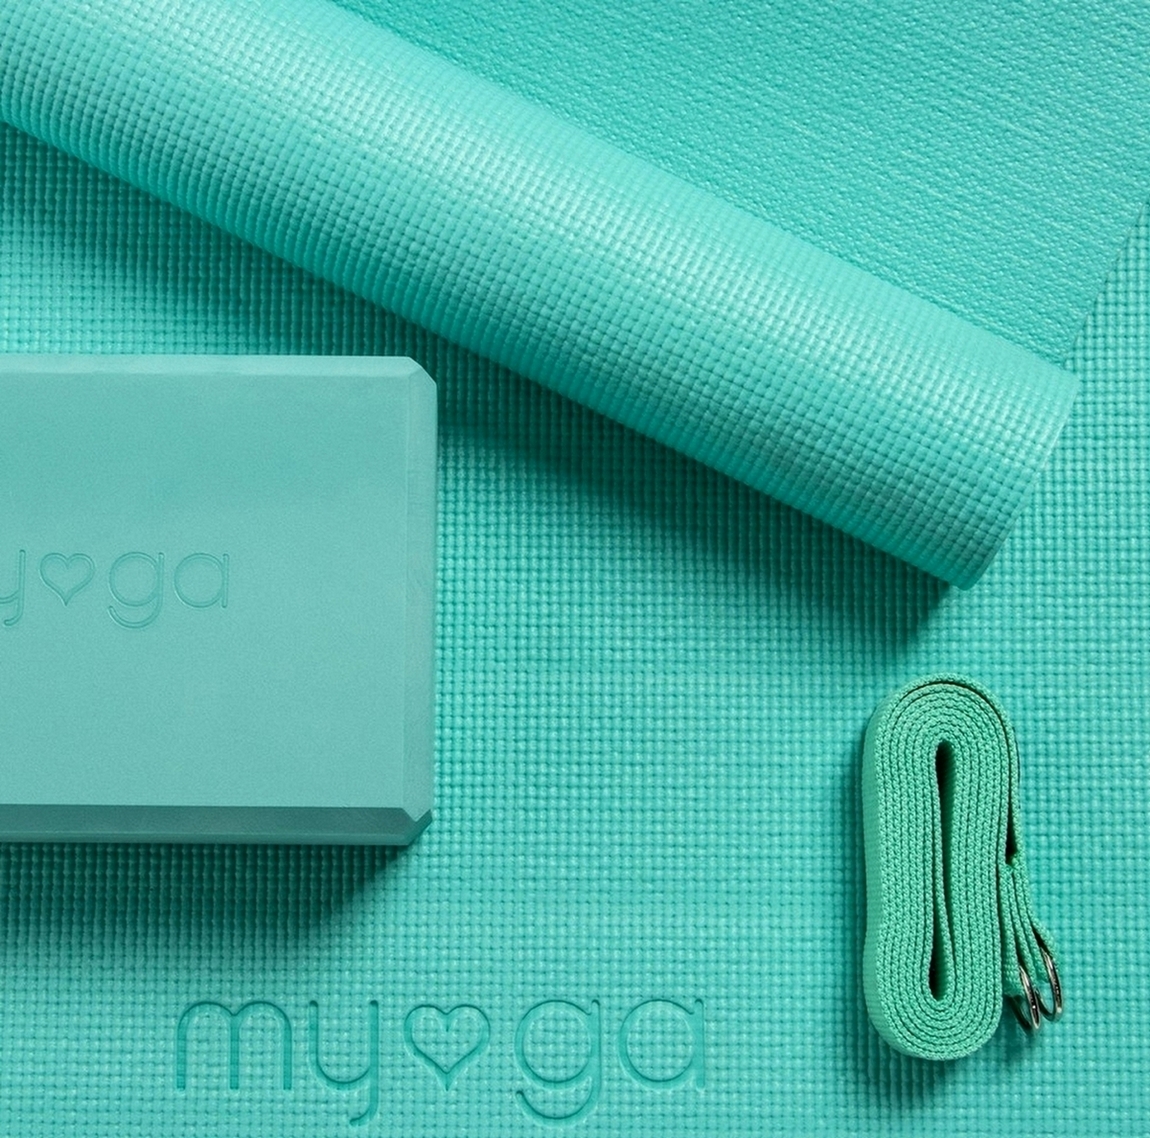 Набор для йоги Myga Yoga Starter Set RY889 бирюзовый 1150_1138